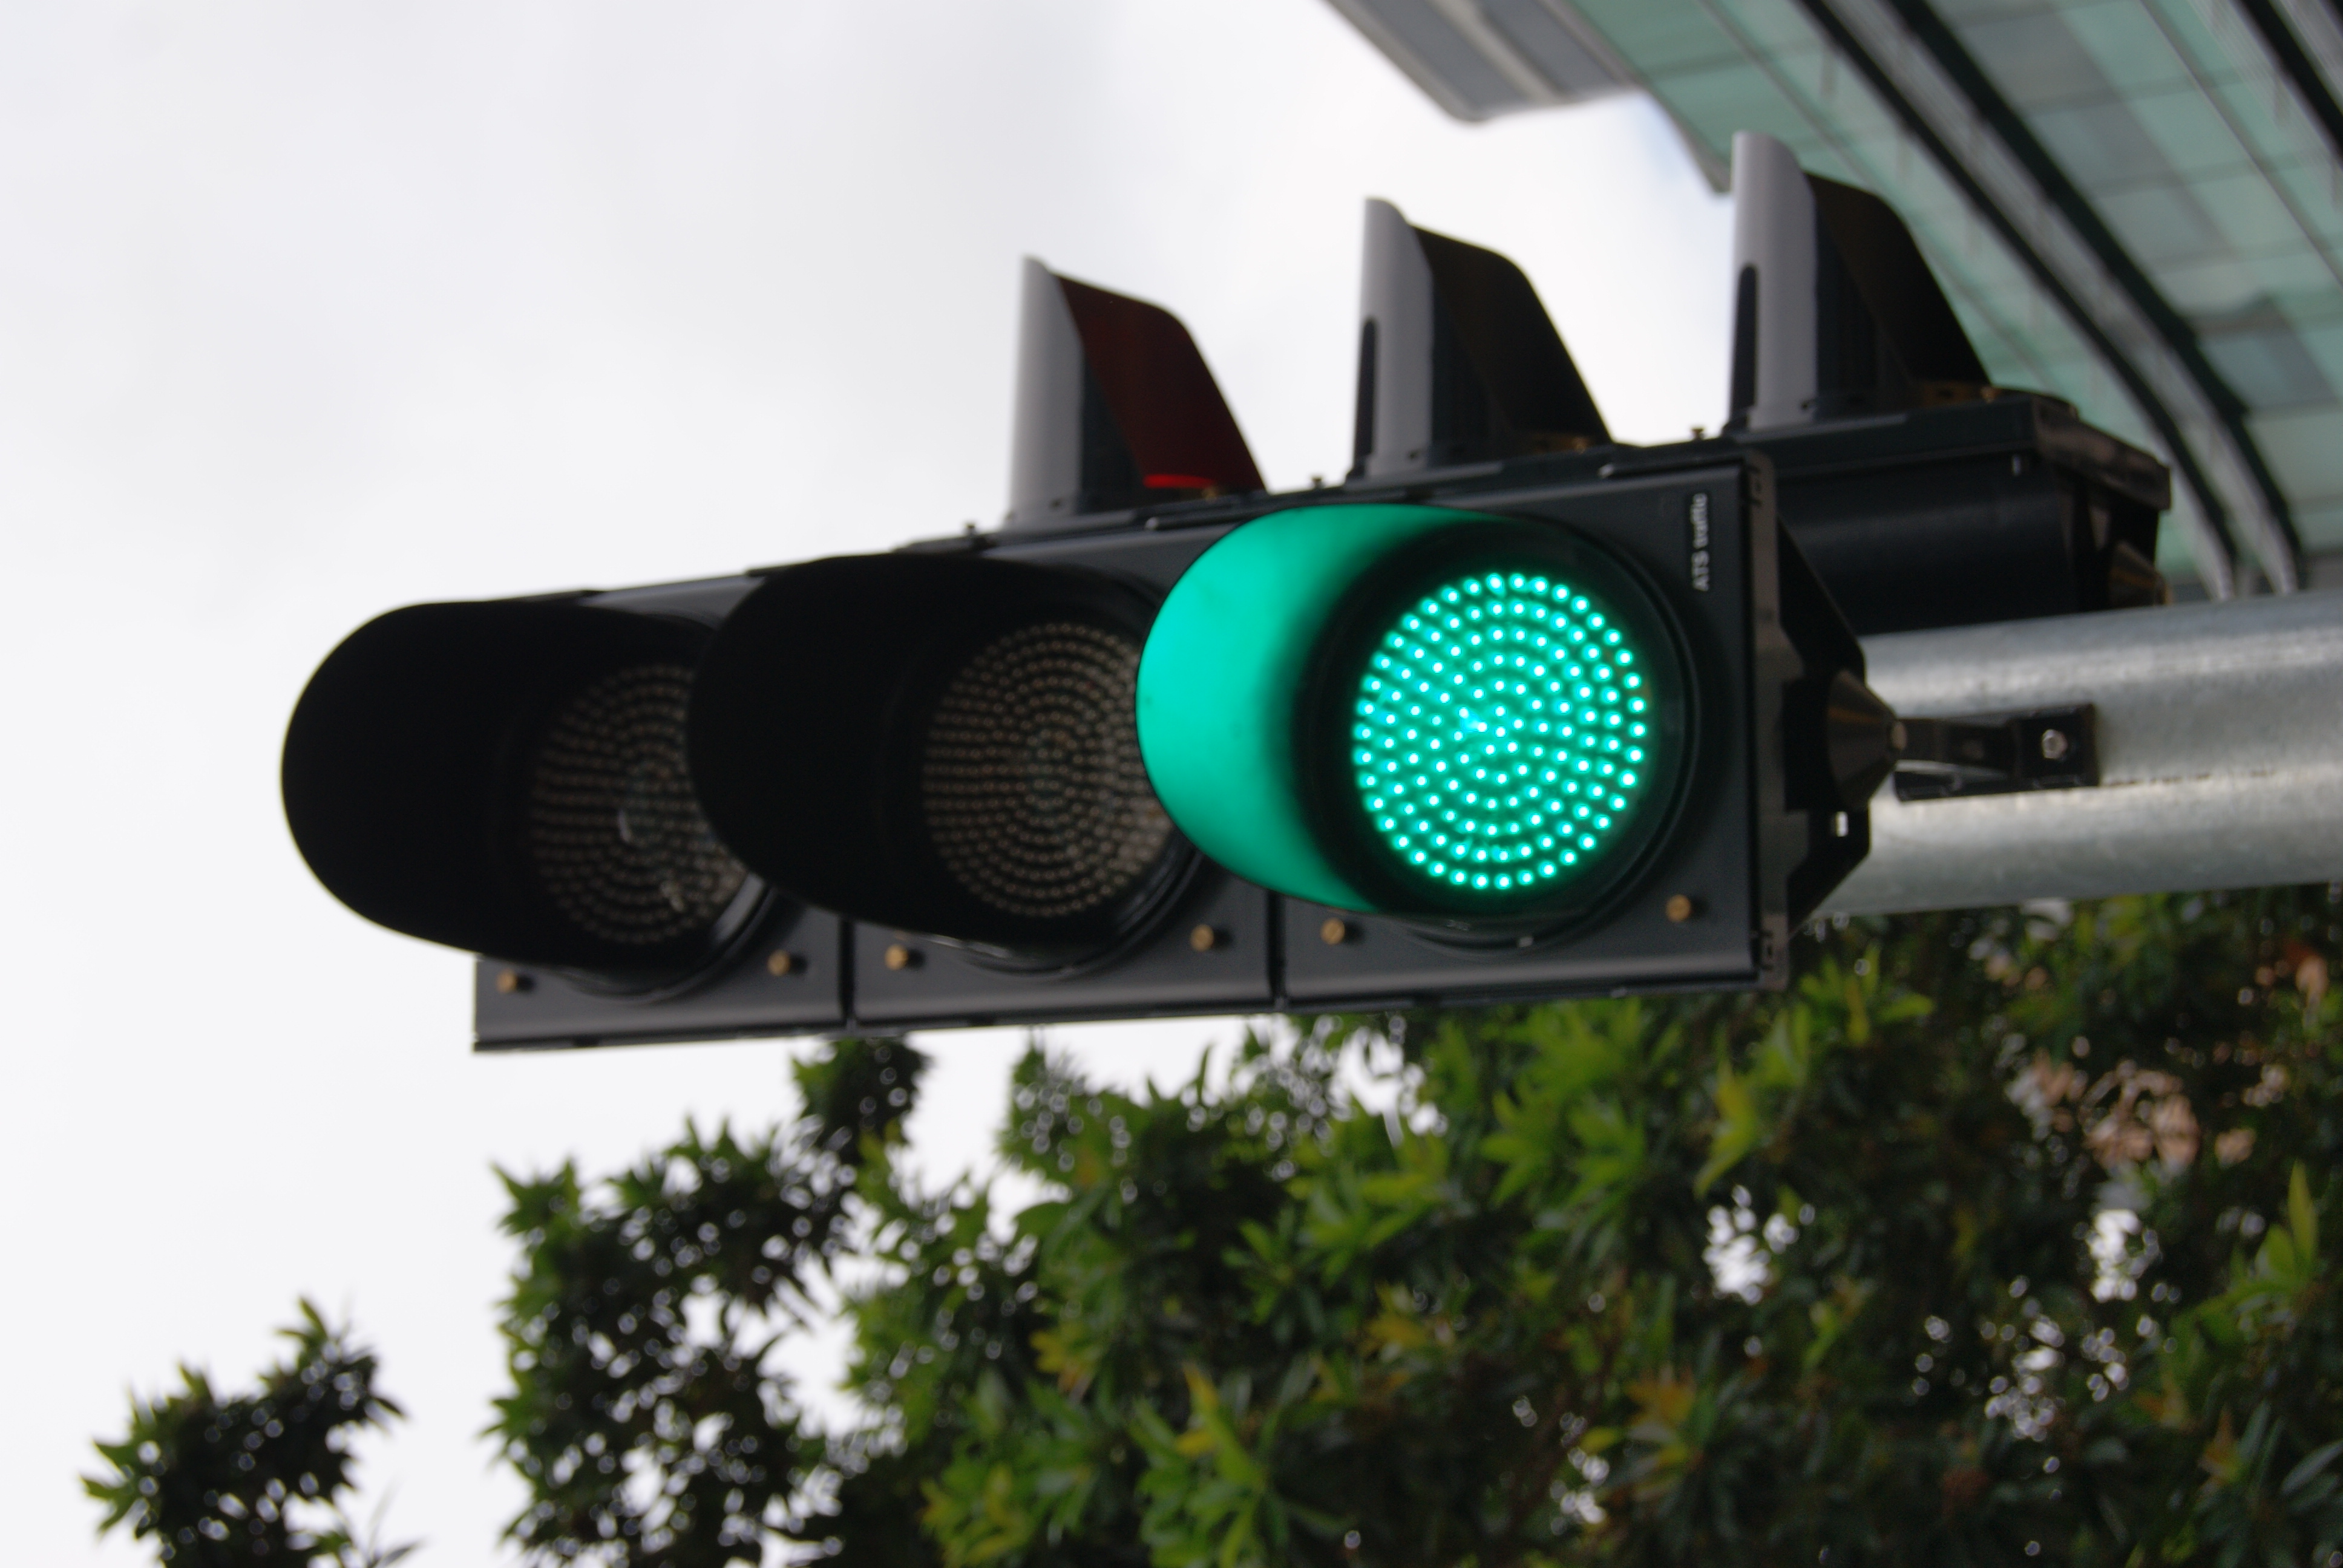 зеленый сигнал светофора картинки